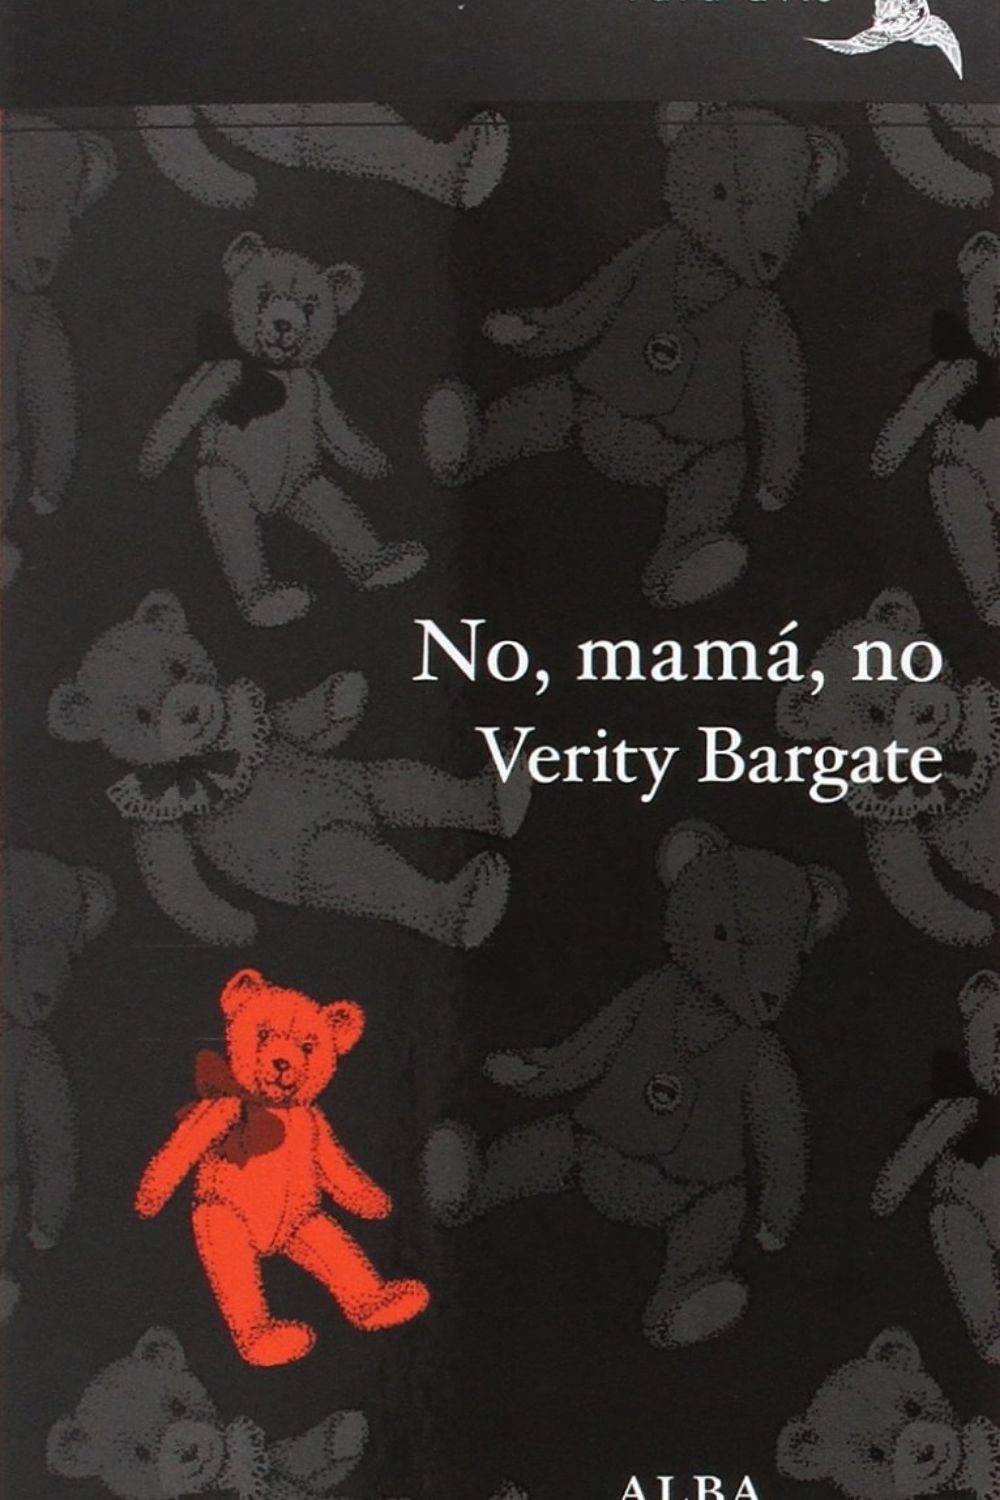 ‘No, mamá, no’ de Verity Bargate